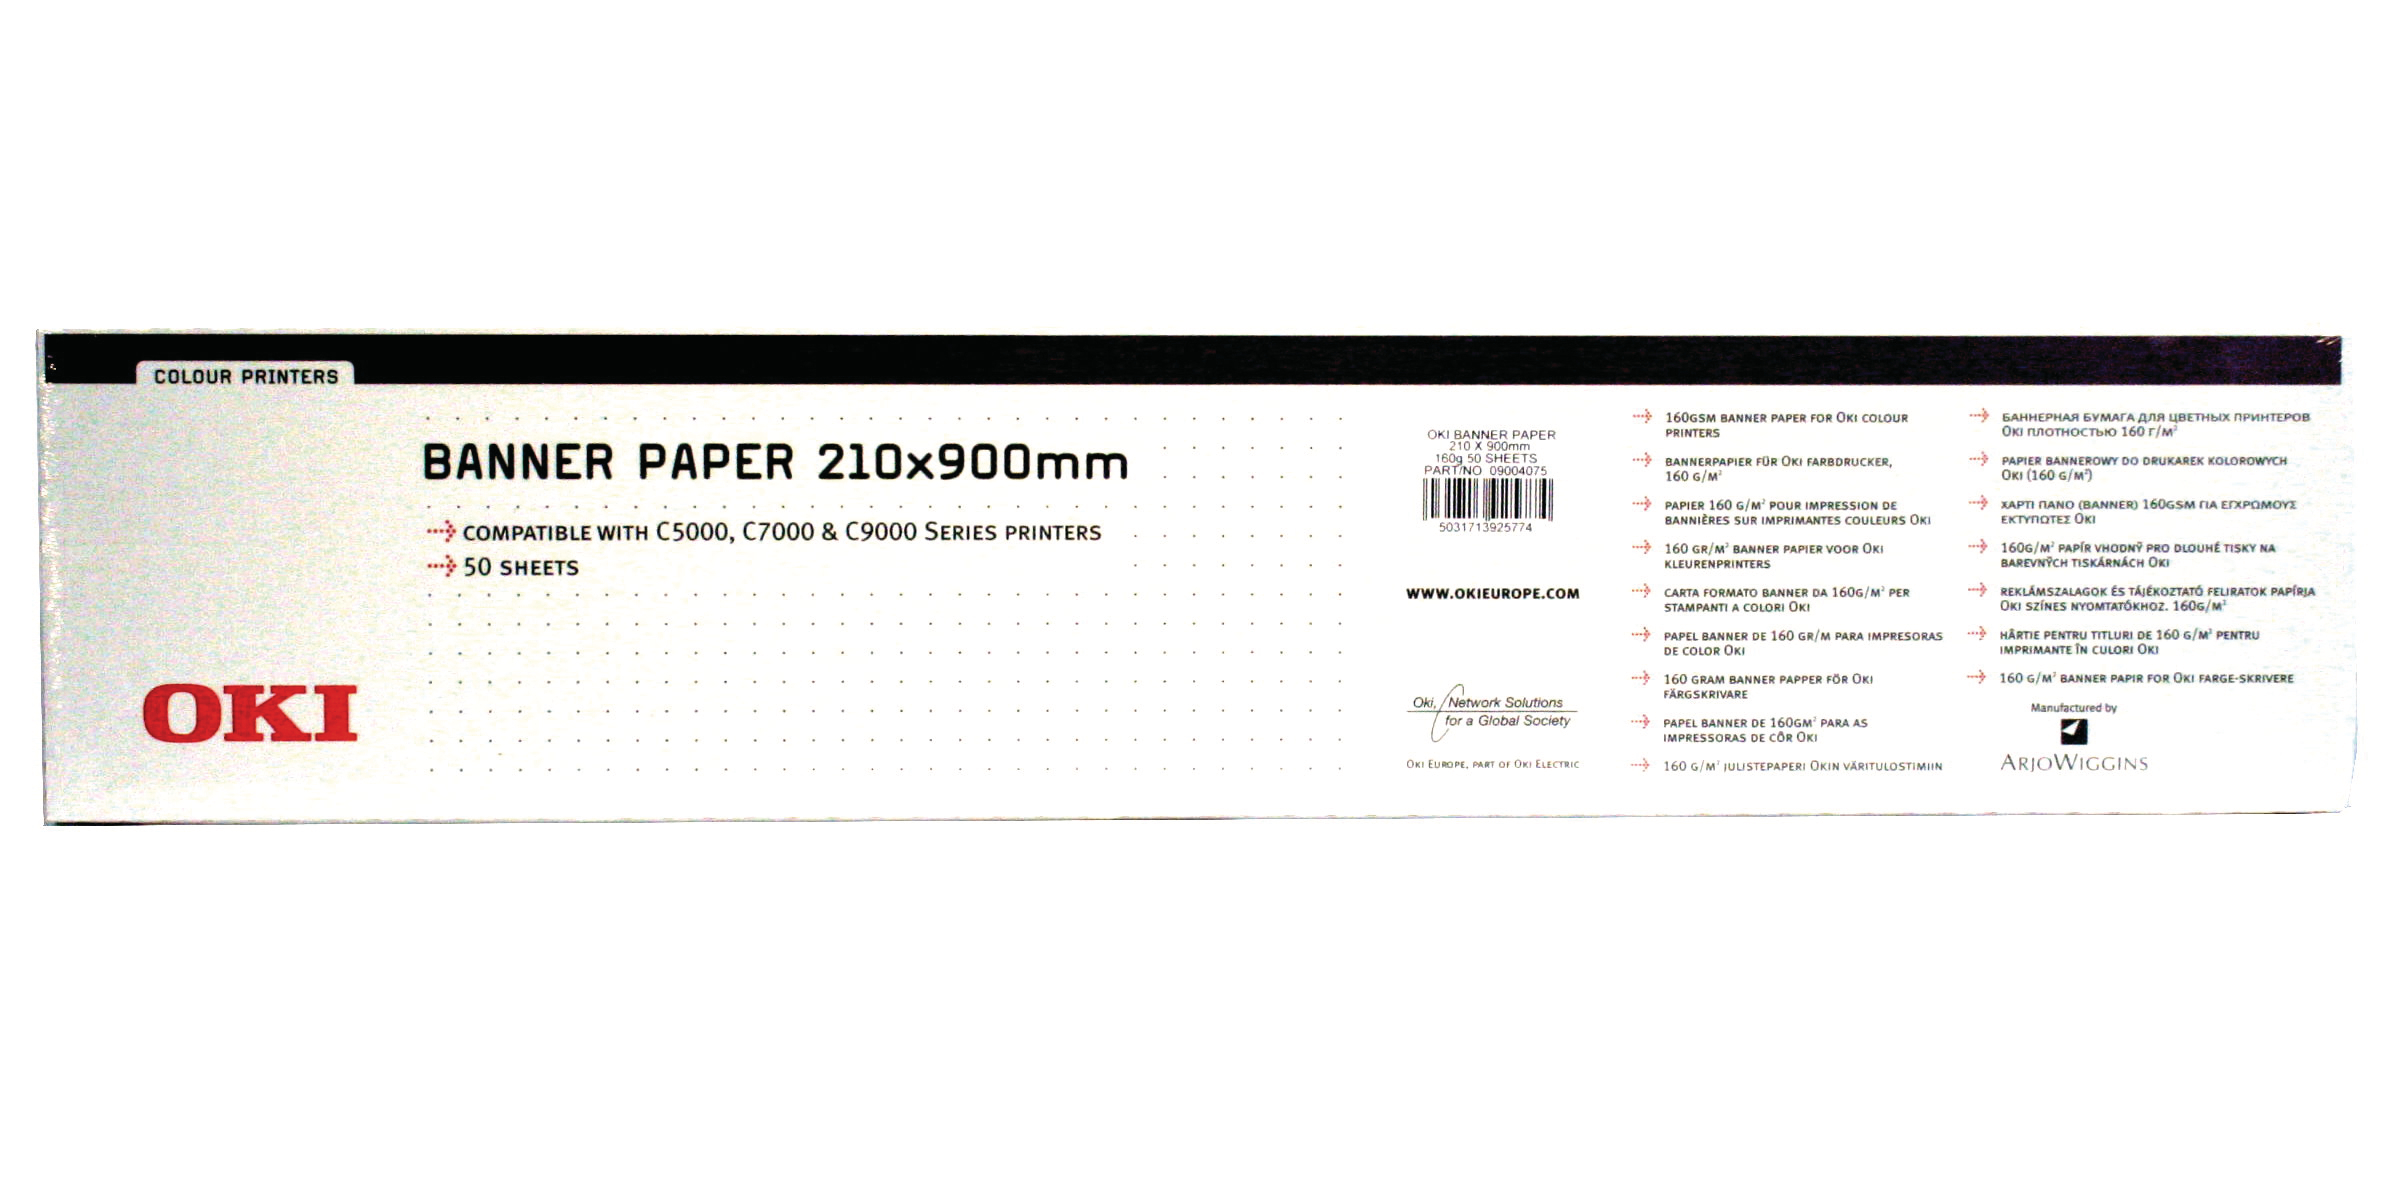 OKI Papier Banner 210x900mm 09004651 C5100 160g 50 feuilles